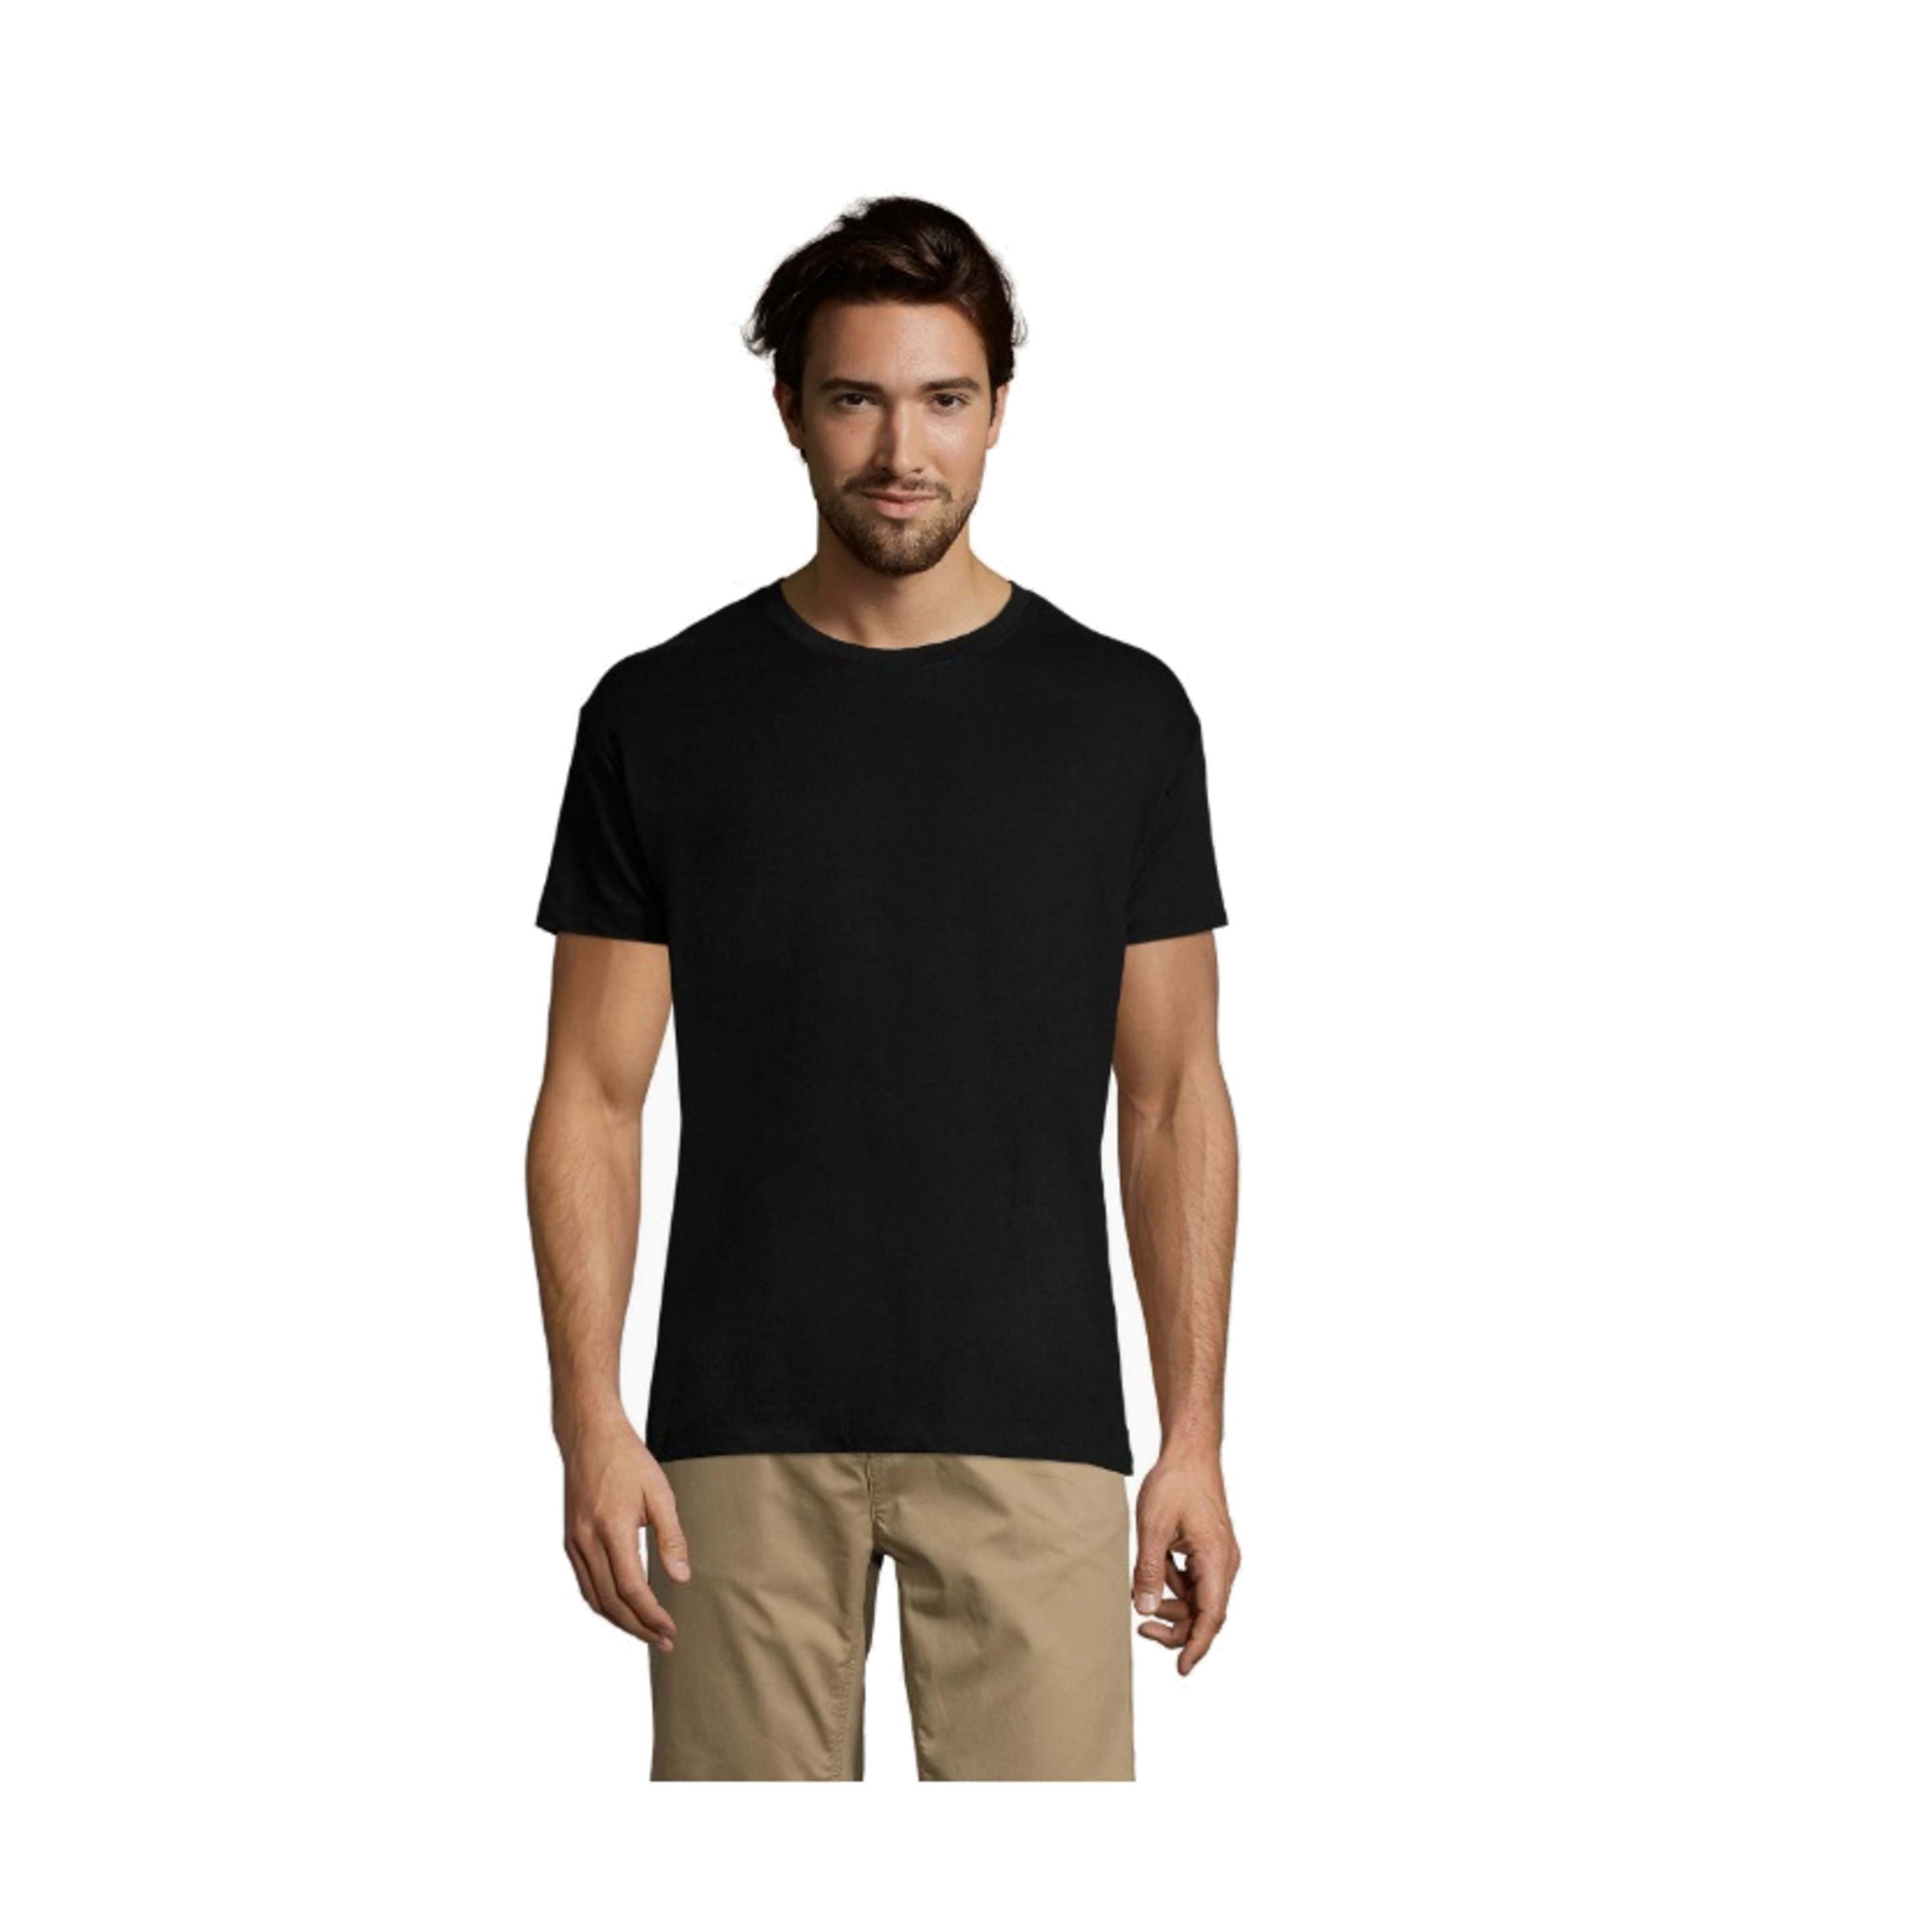 Pacote De 5 Camisetas / Camiseta Unisex Regent Crewneck - ceniza - 